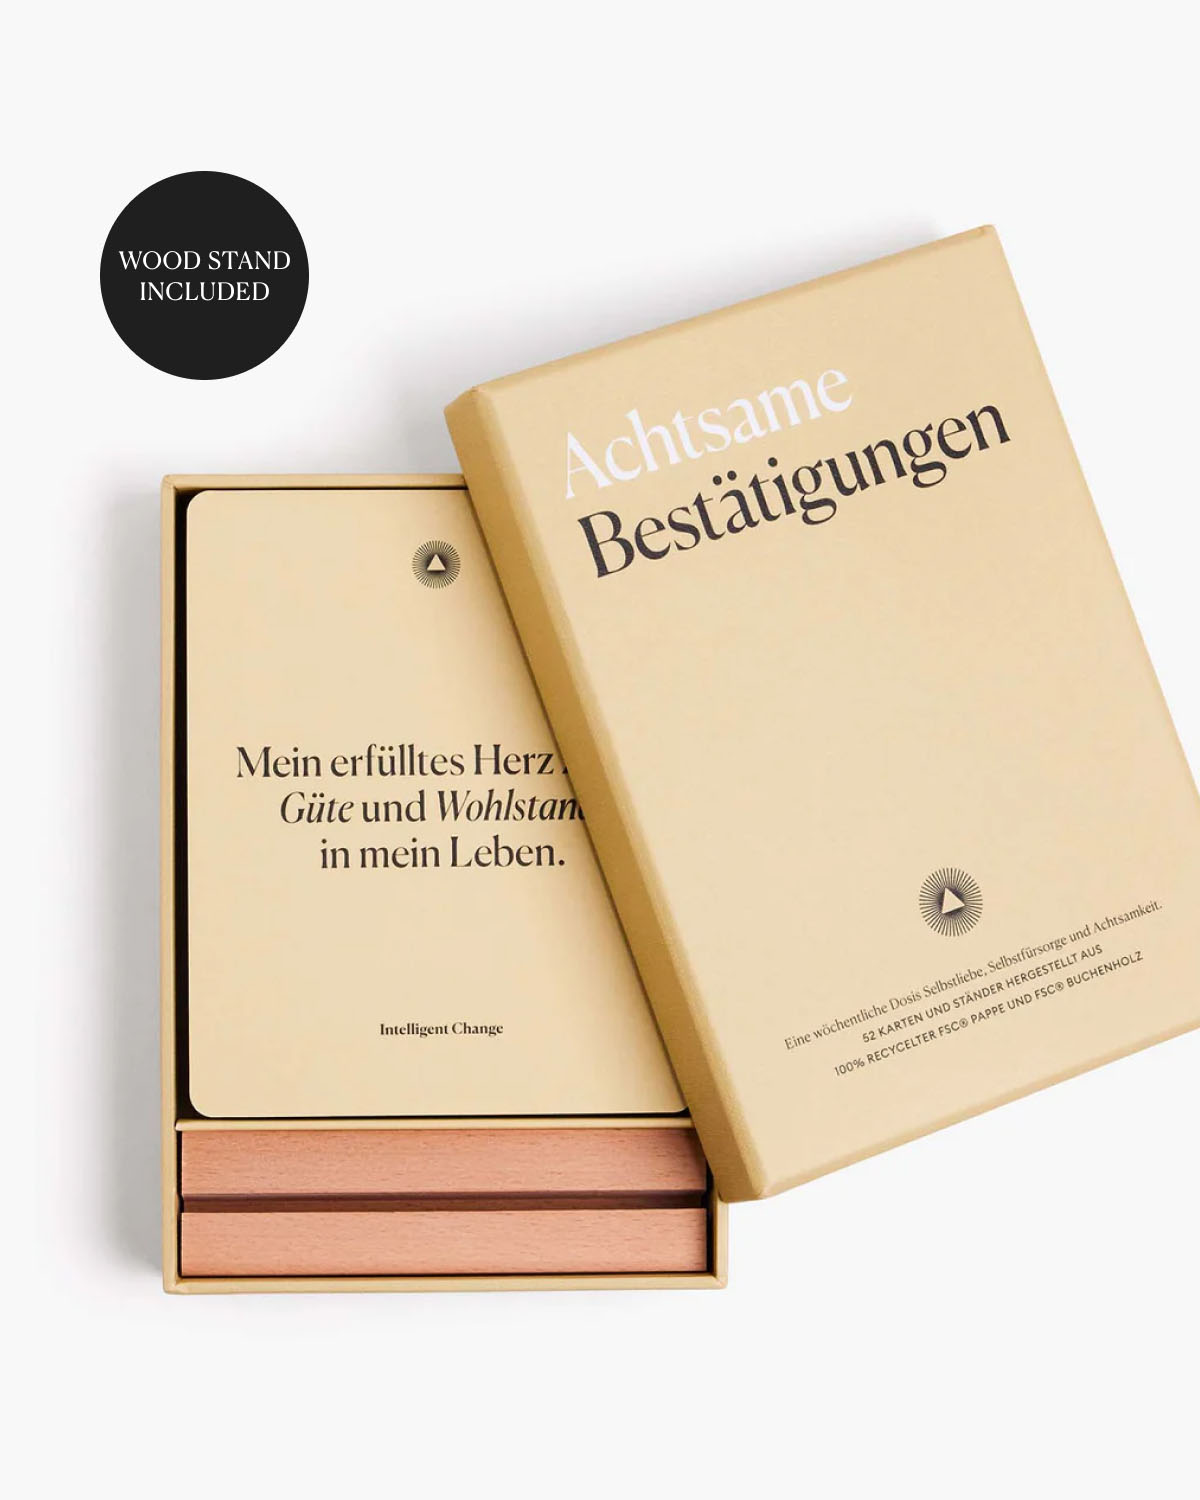 Mindful Affirmations: German Edition – Achtsame Bestätigungen - German by Intelligent Change